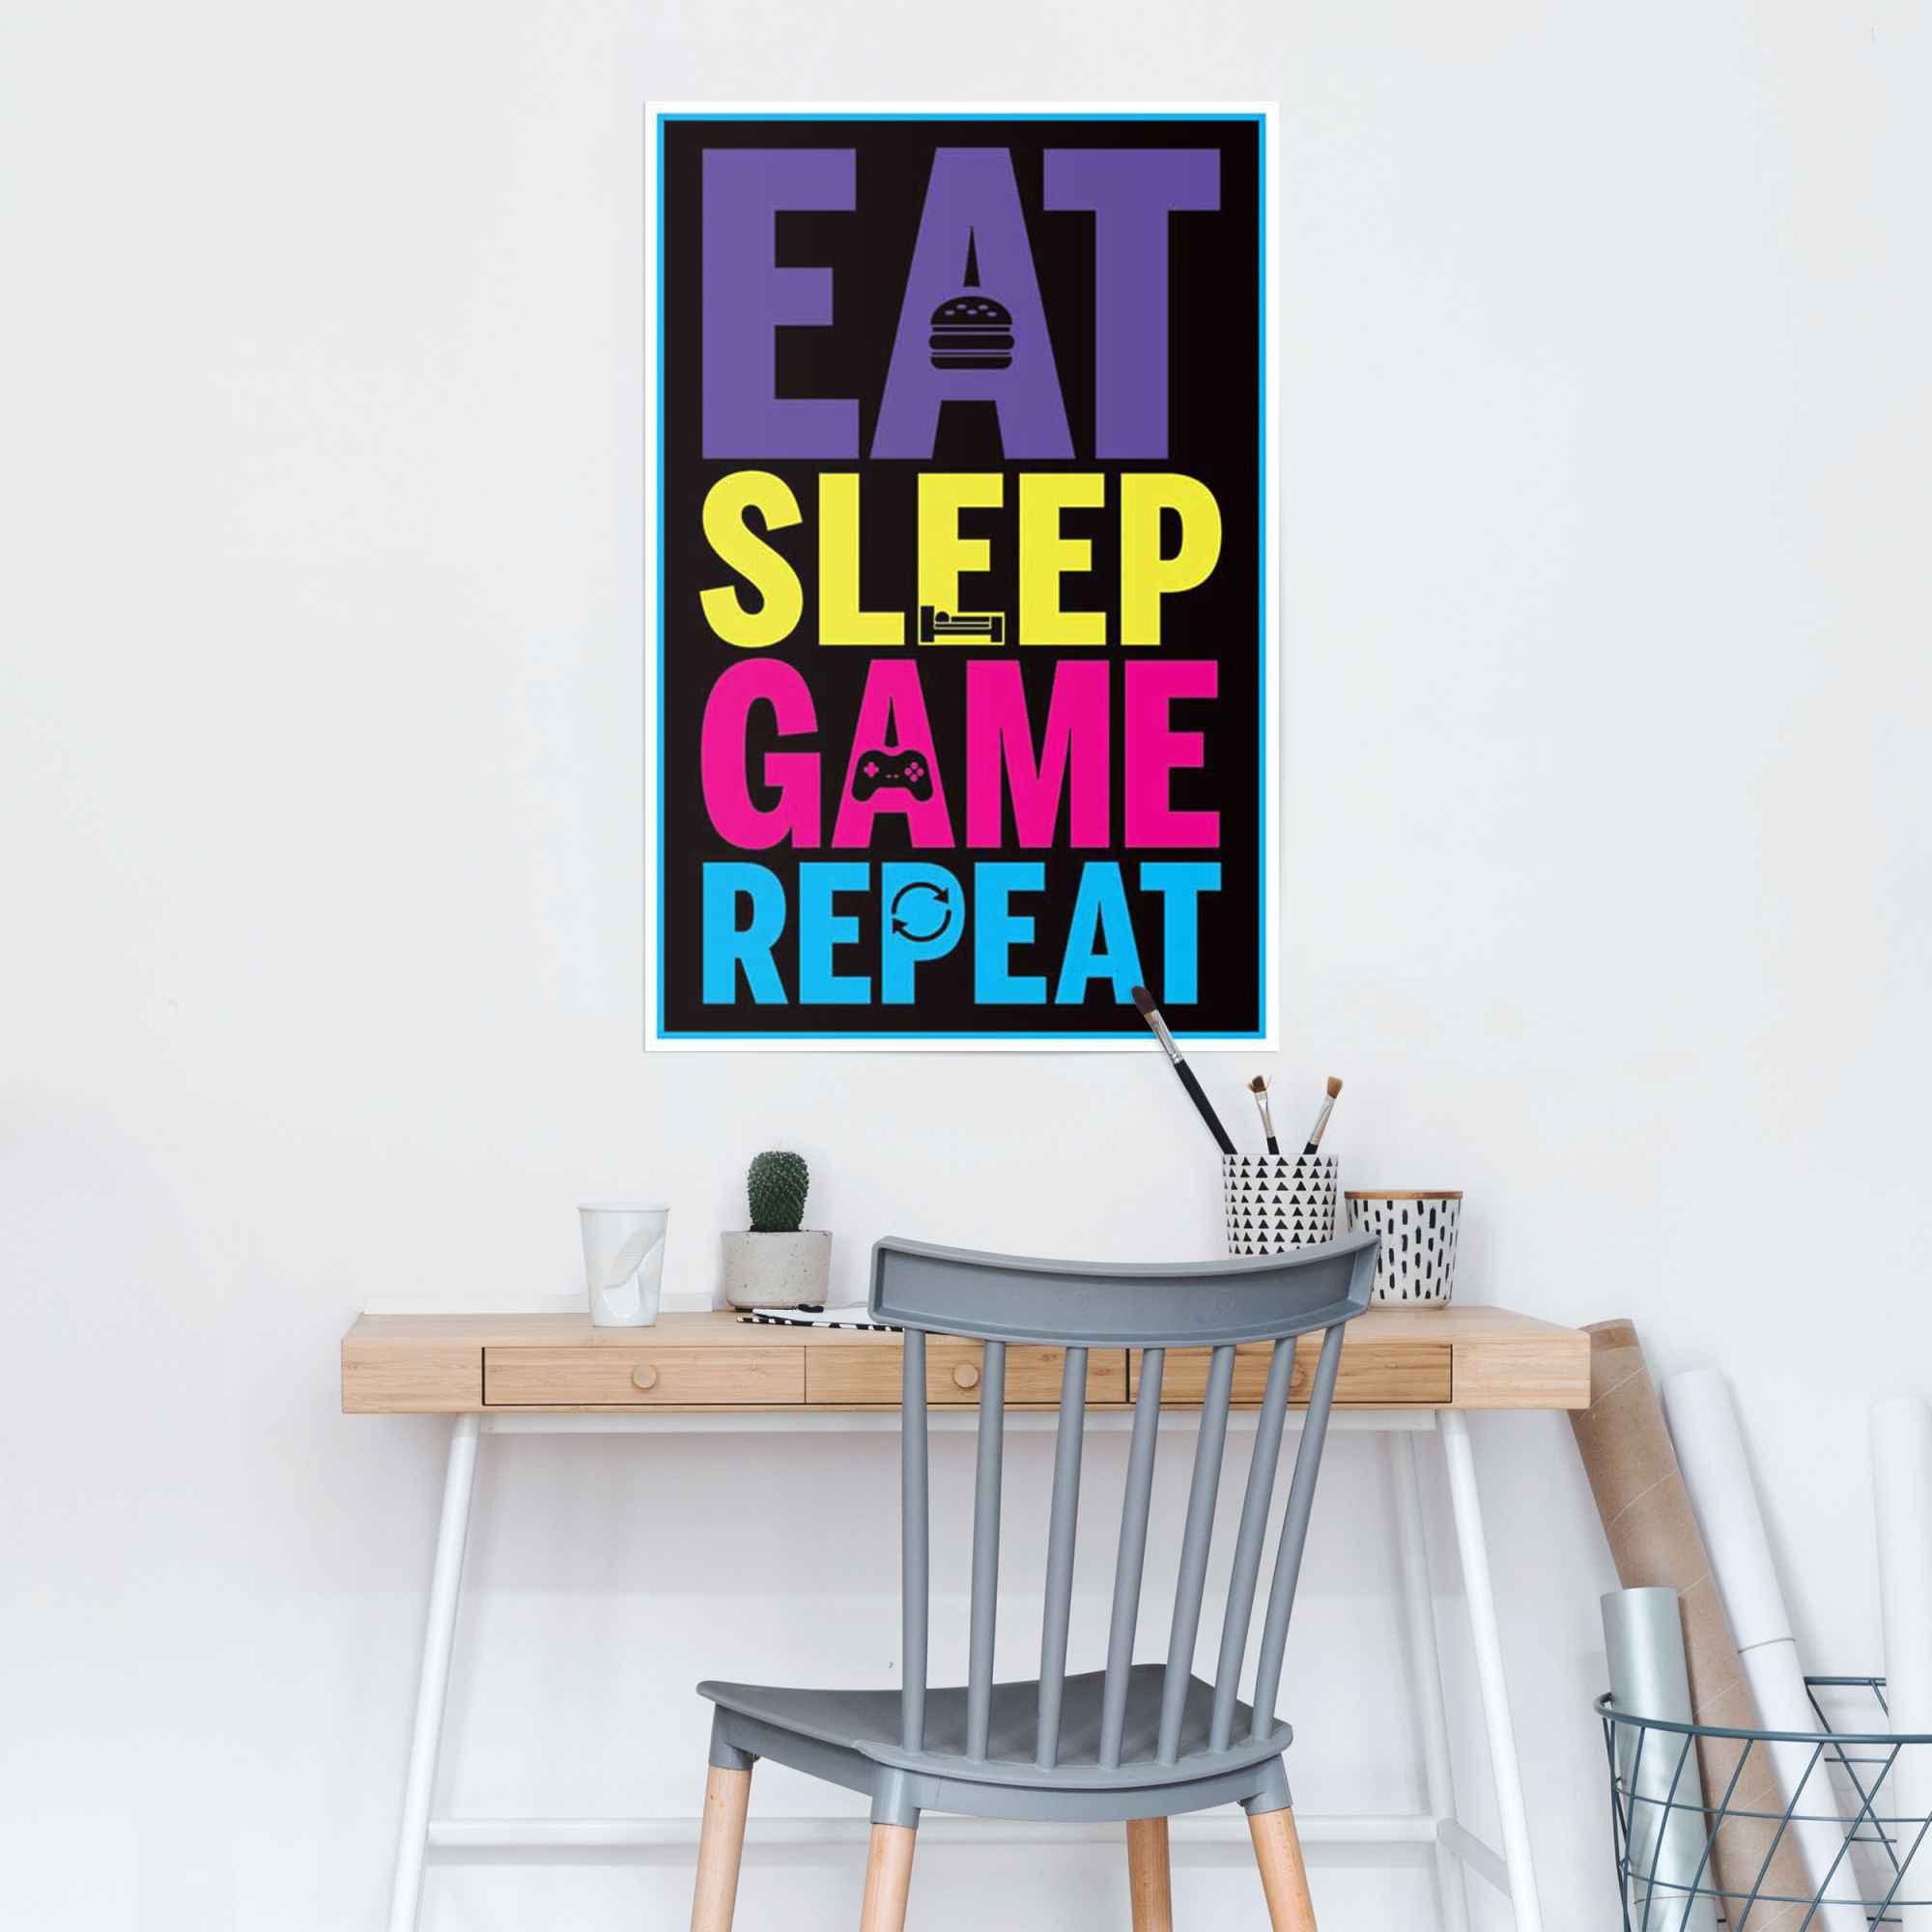 game St) Eat Poster repeat, (1 sleep Reinders!